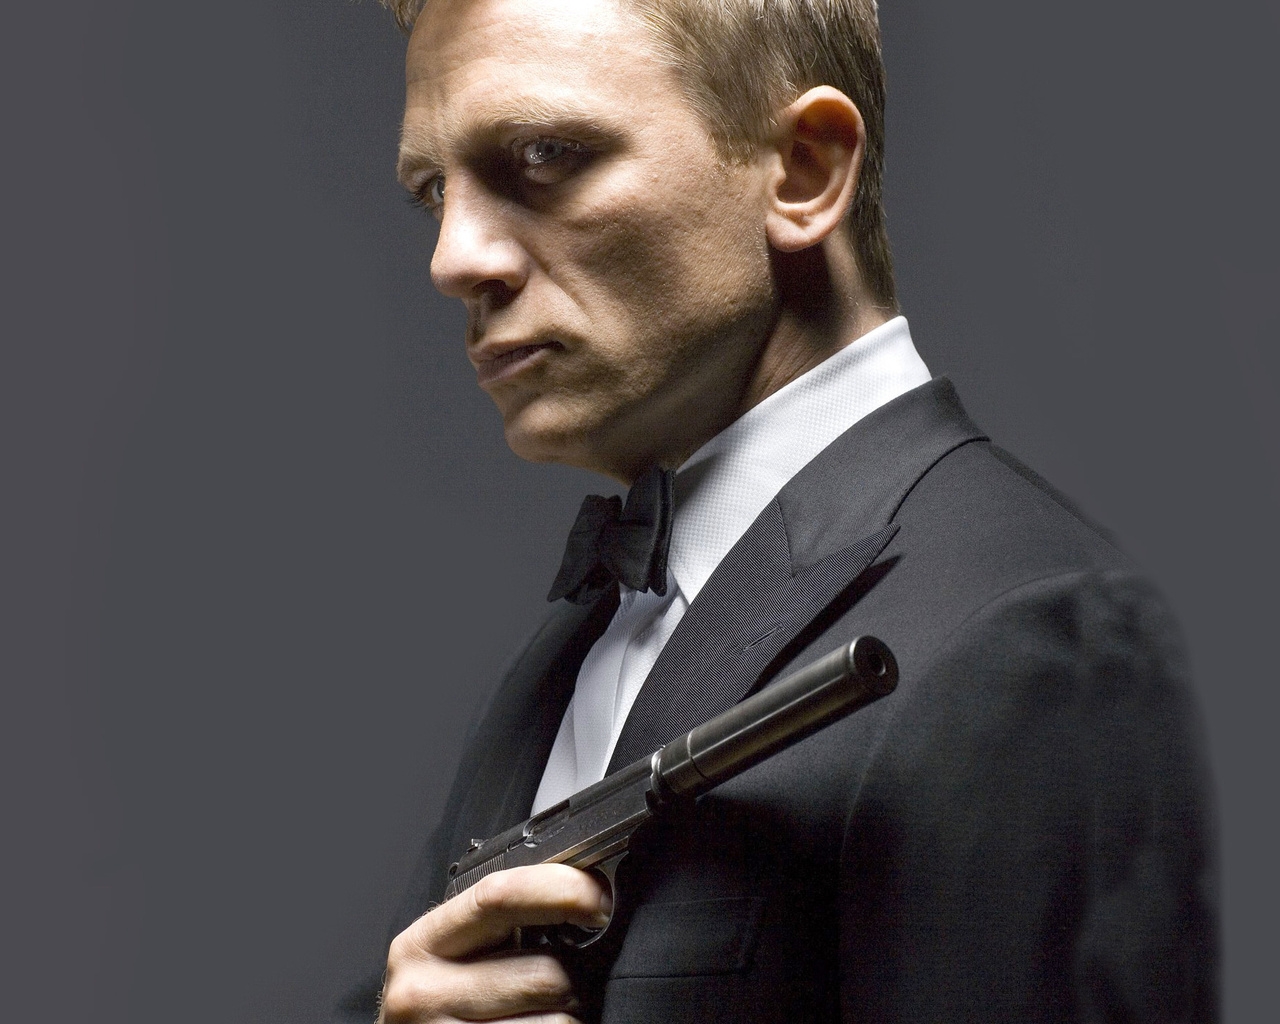 Daniel Craig 007 for 1280 x 1024 resolution